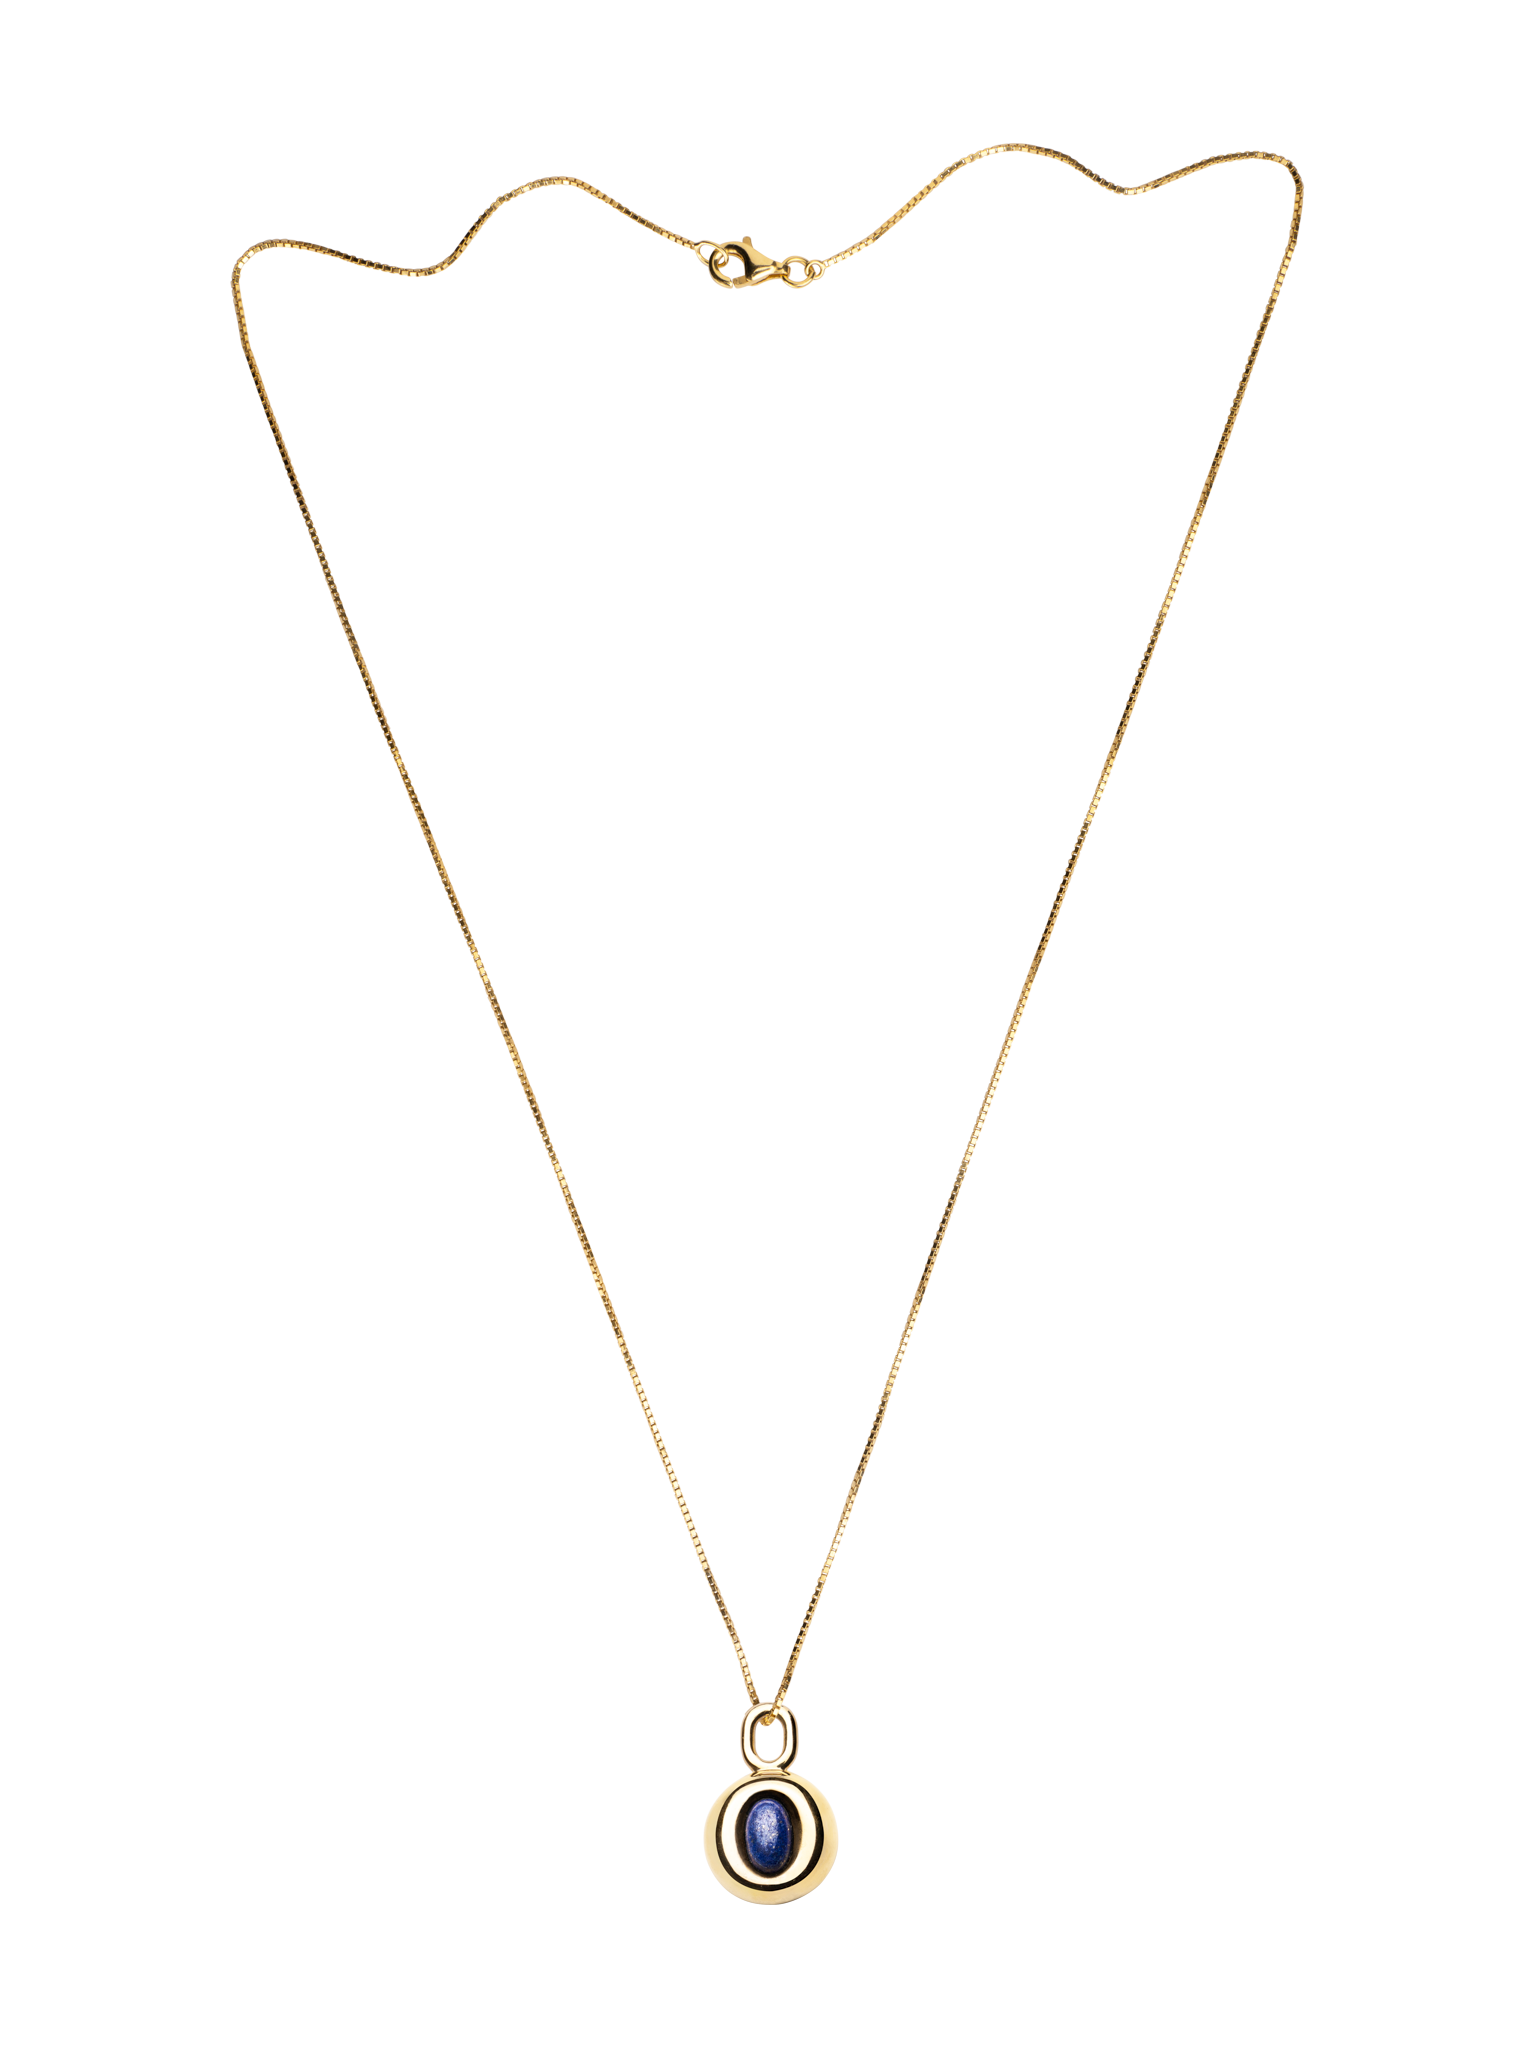 18 albion mews necklace - lapis lazuli & gold vermeil